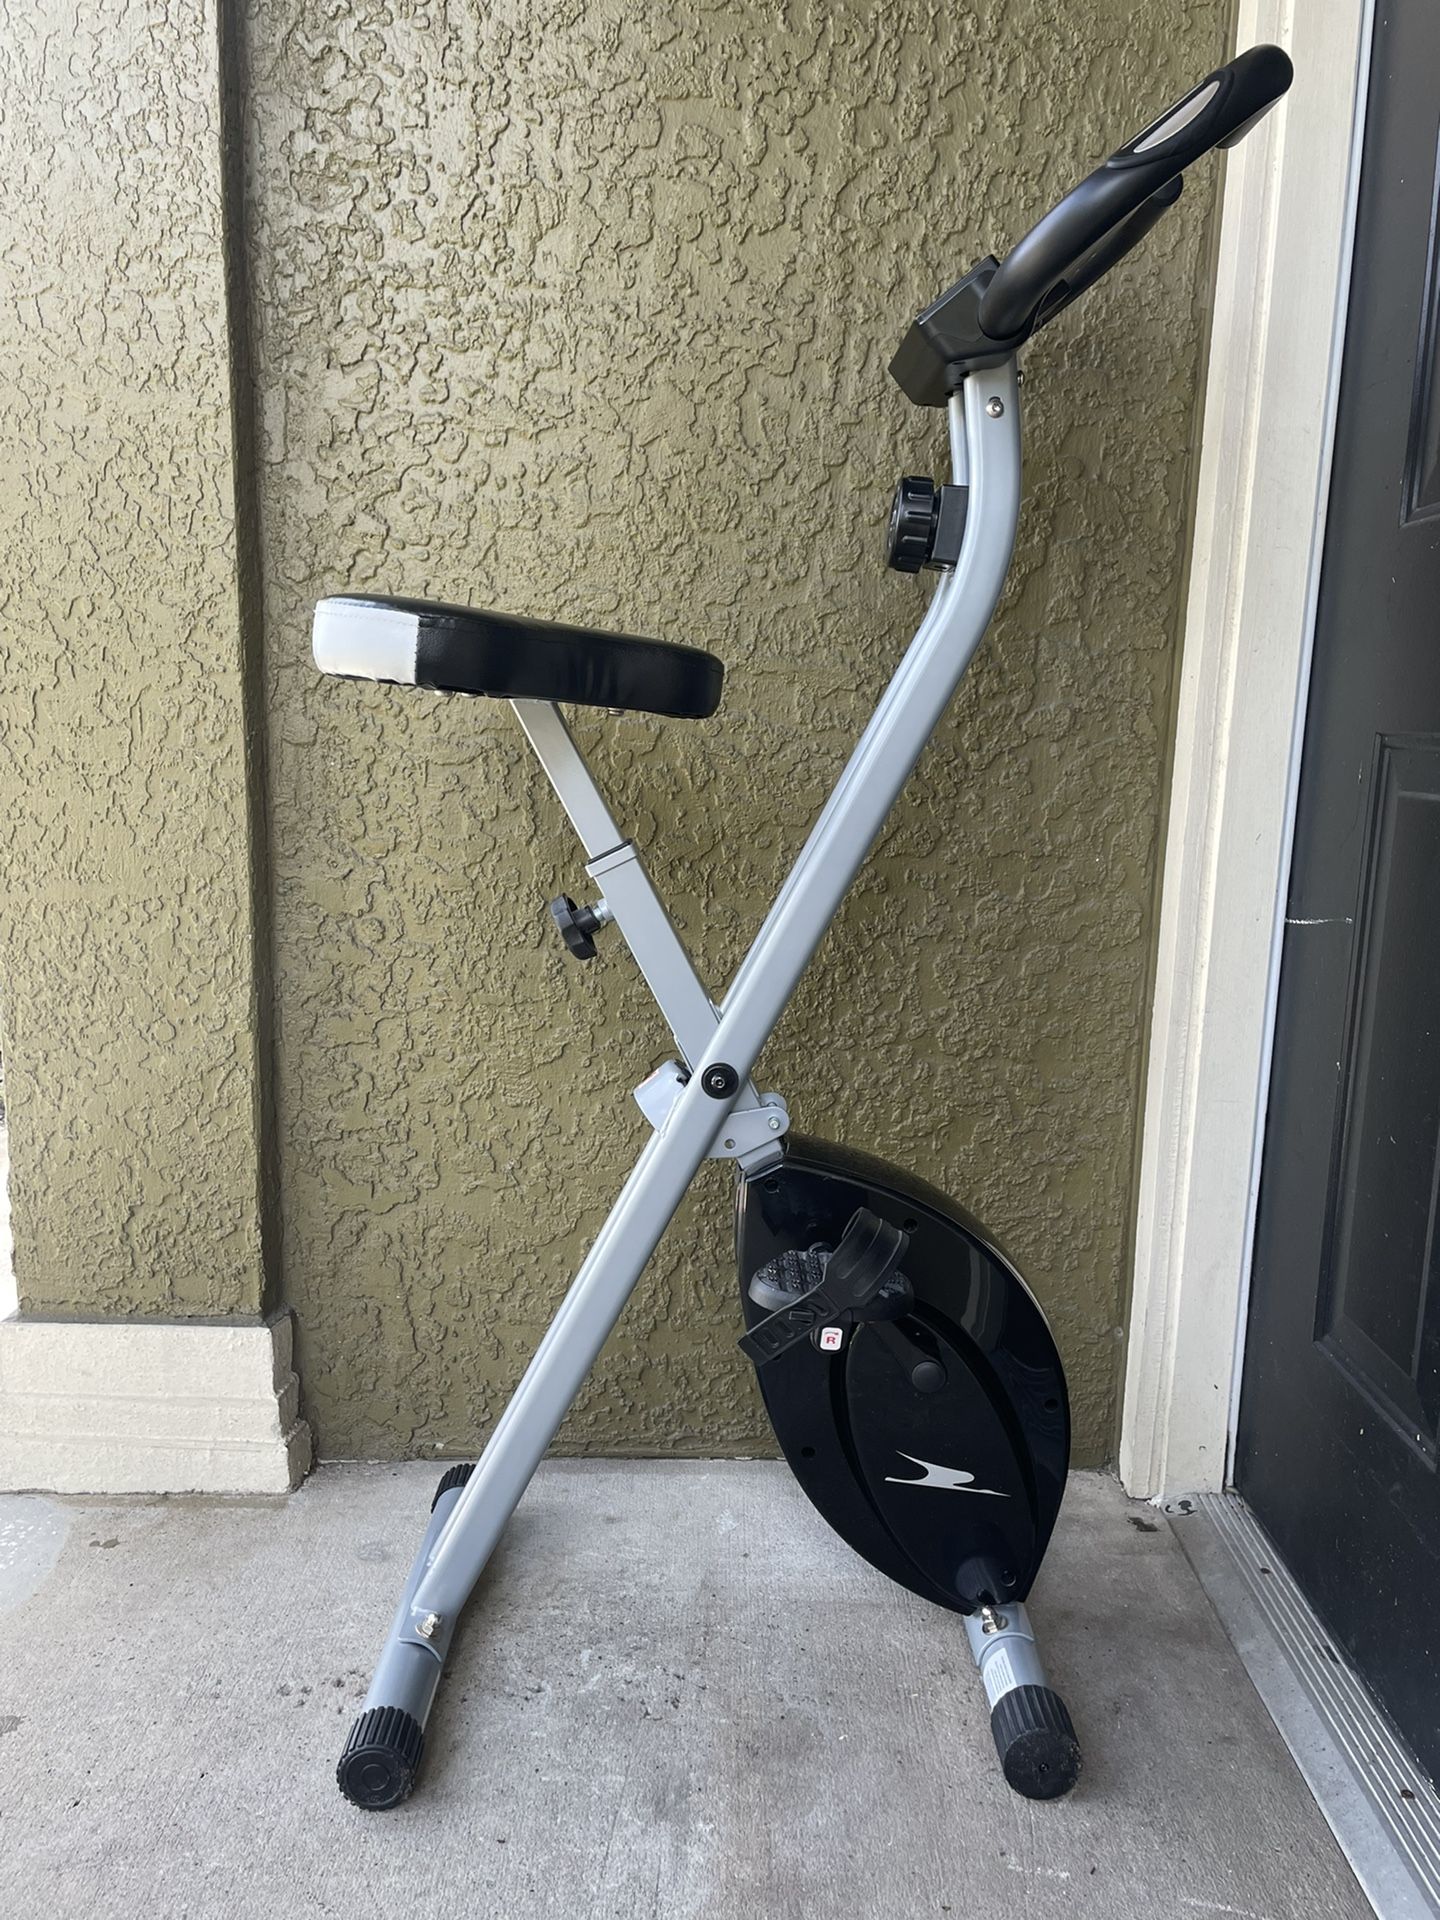 Foldable exercise bike 